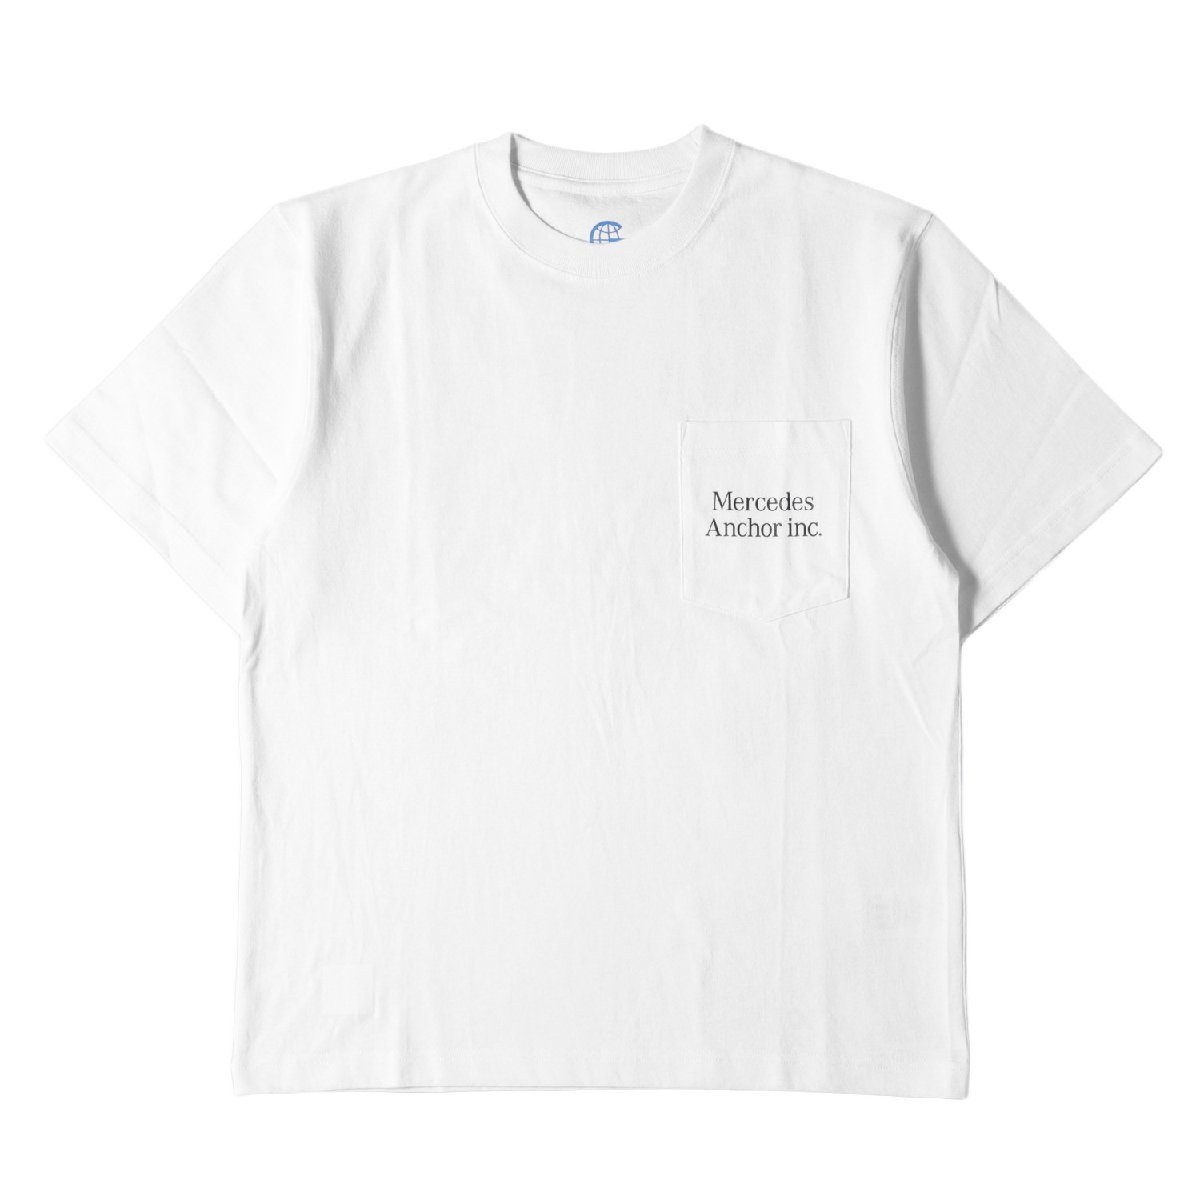 MERCEDES ANCHOR INC メルセデスアンカーインク Tシャツ サイズ:S 23SS ブランドロゴ ポケット クルーネック 半袖 Tシャツ ホワイト 白